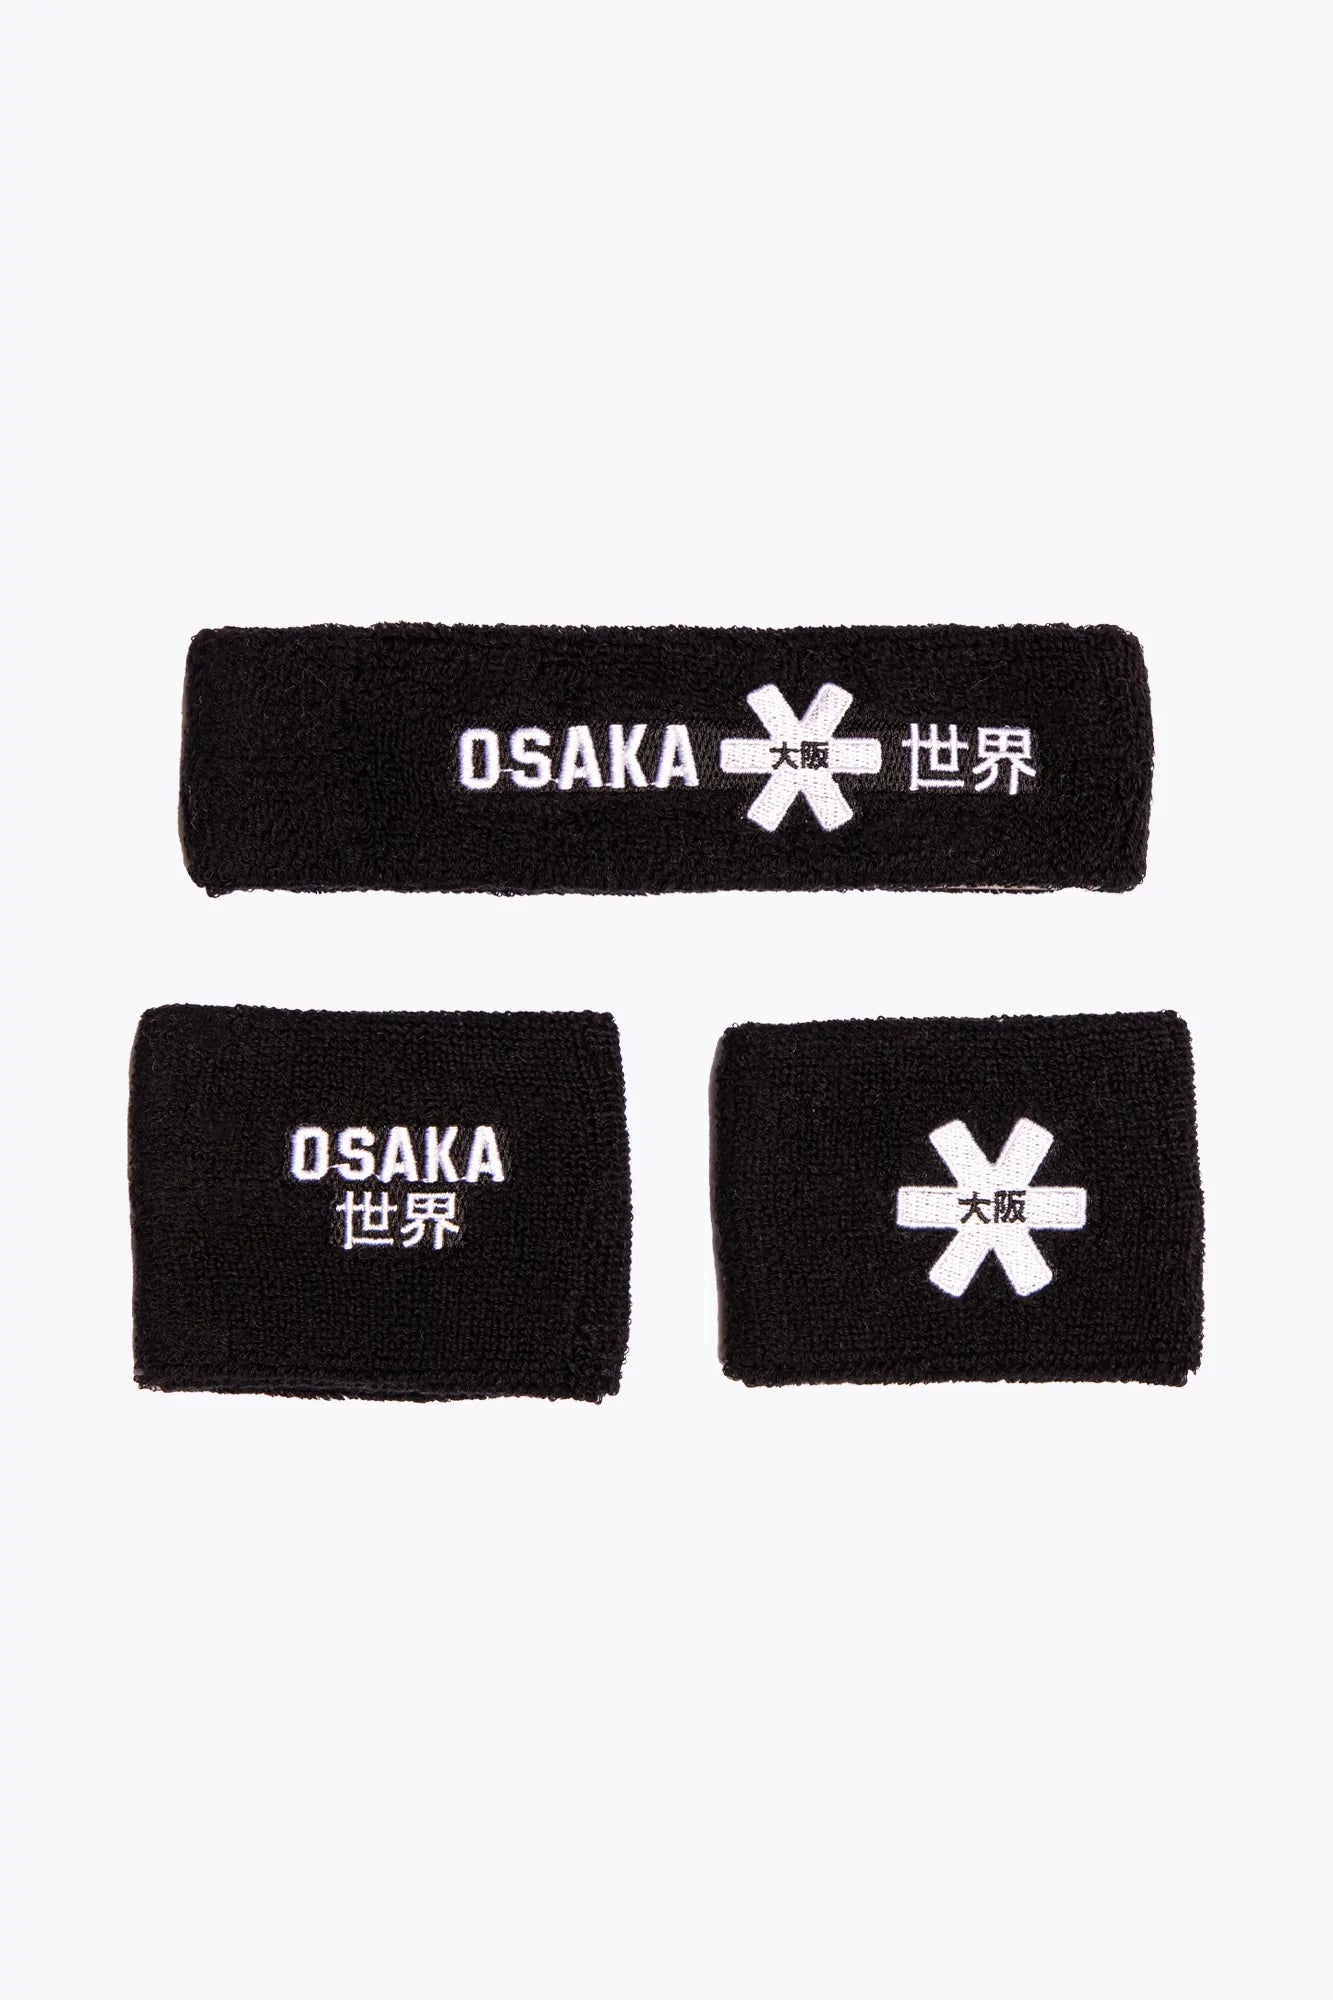 Osaka Sweatband Set - Black